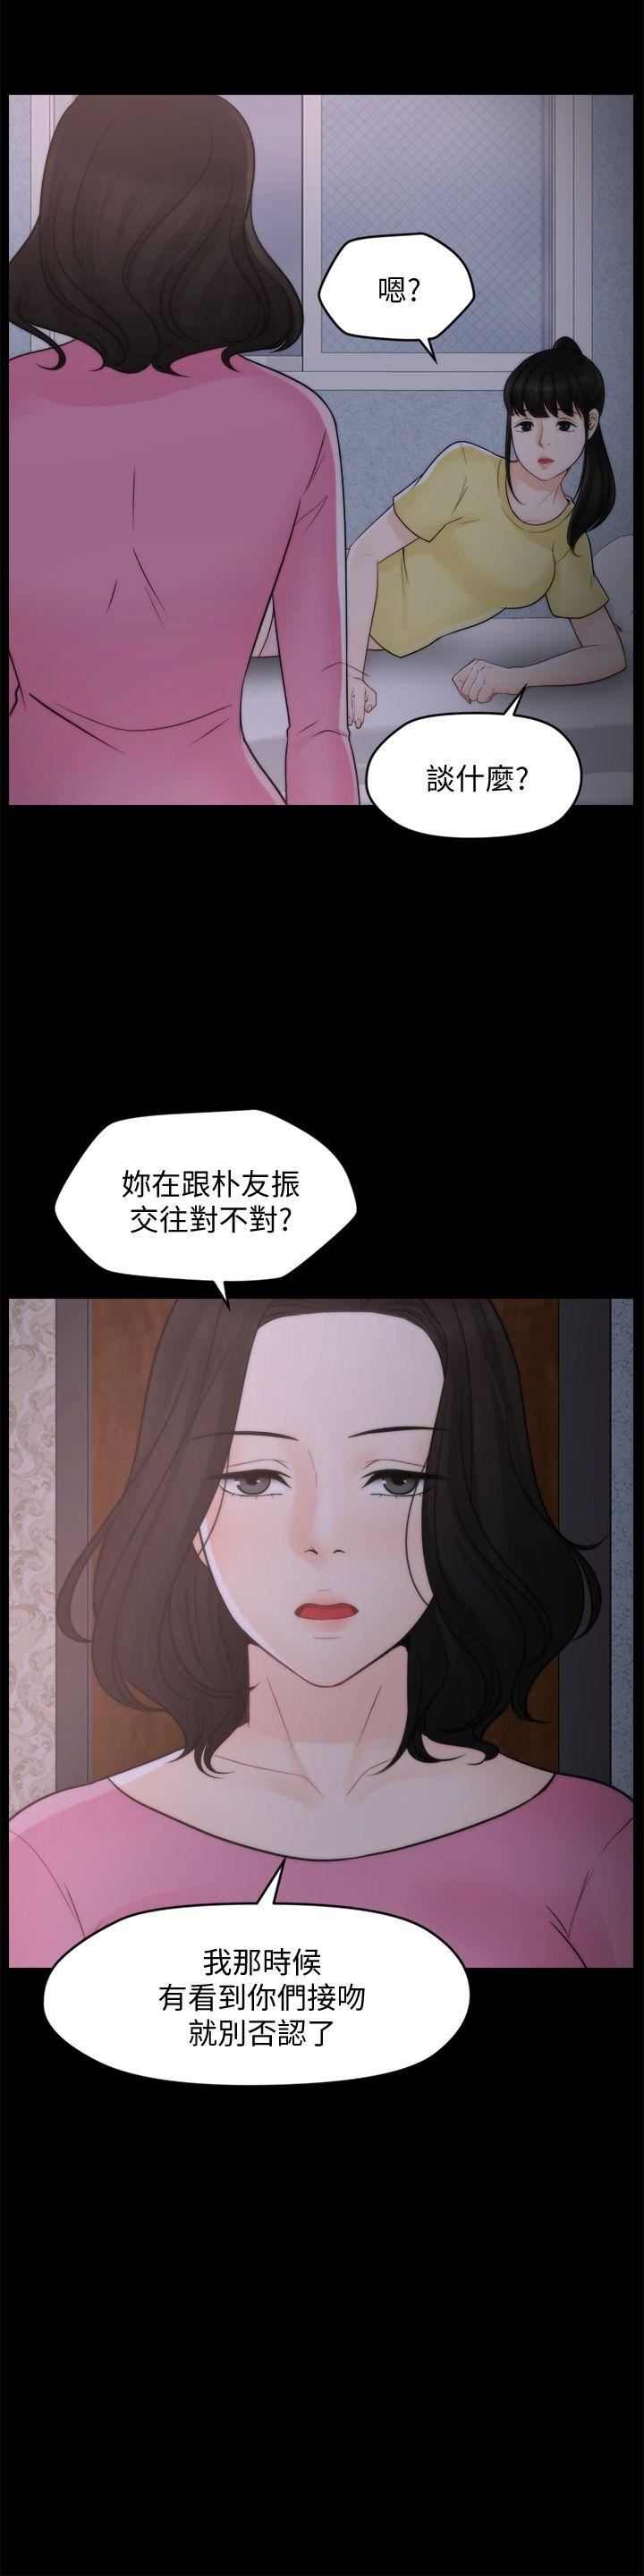 韩国污漫画 偷偷愛 第47话-友振的真心 2